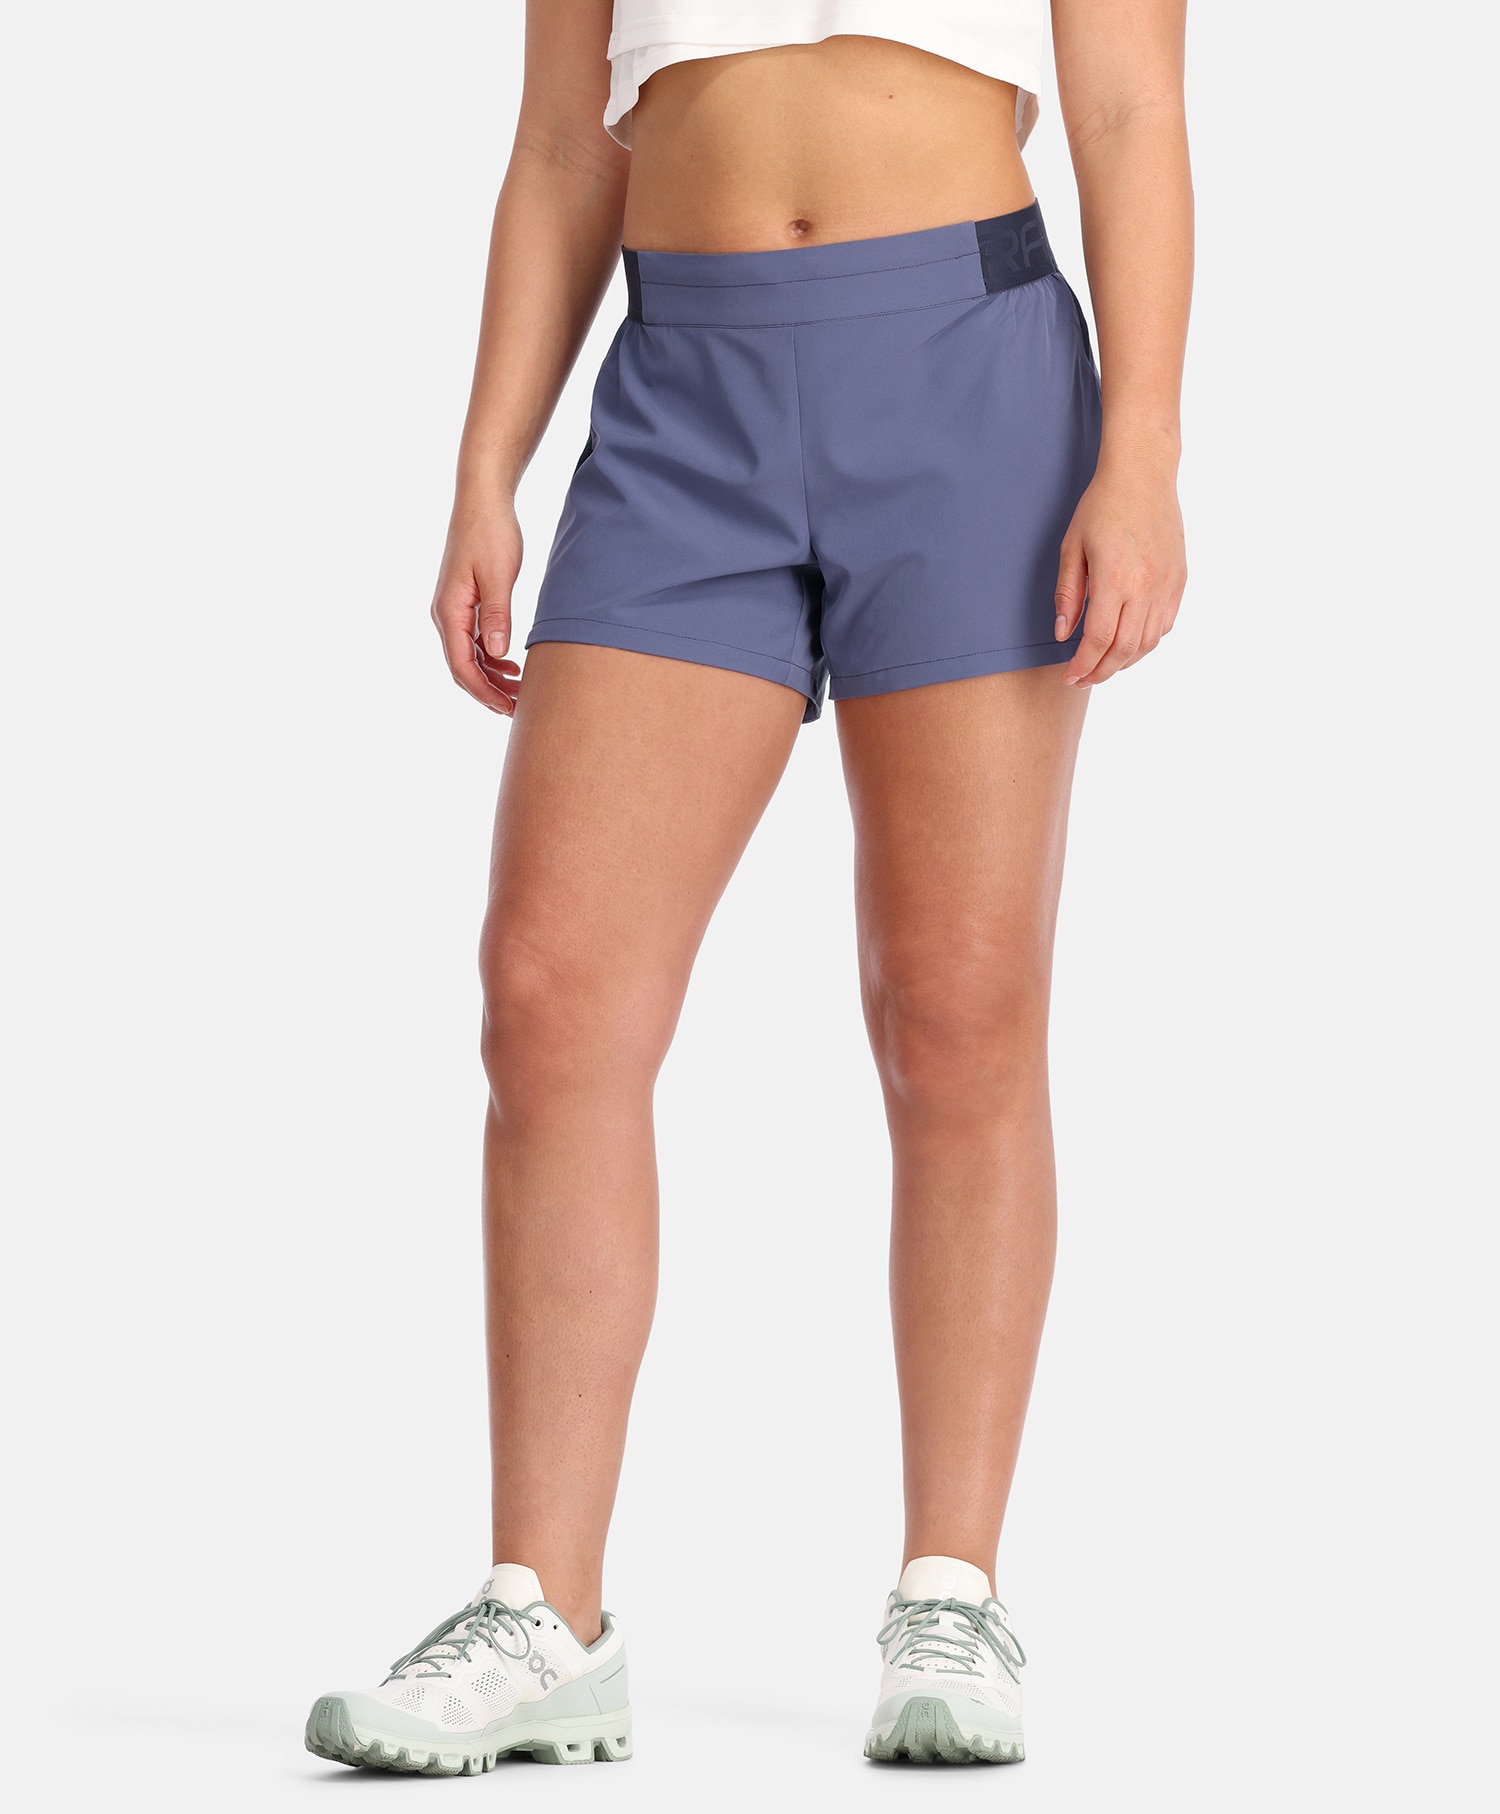 Kari Traa Nora 2.0 shorts